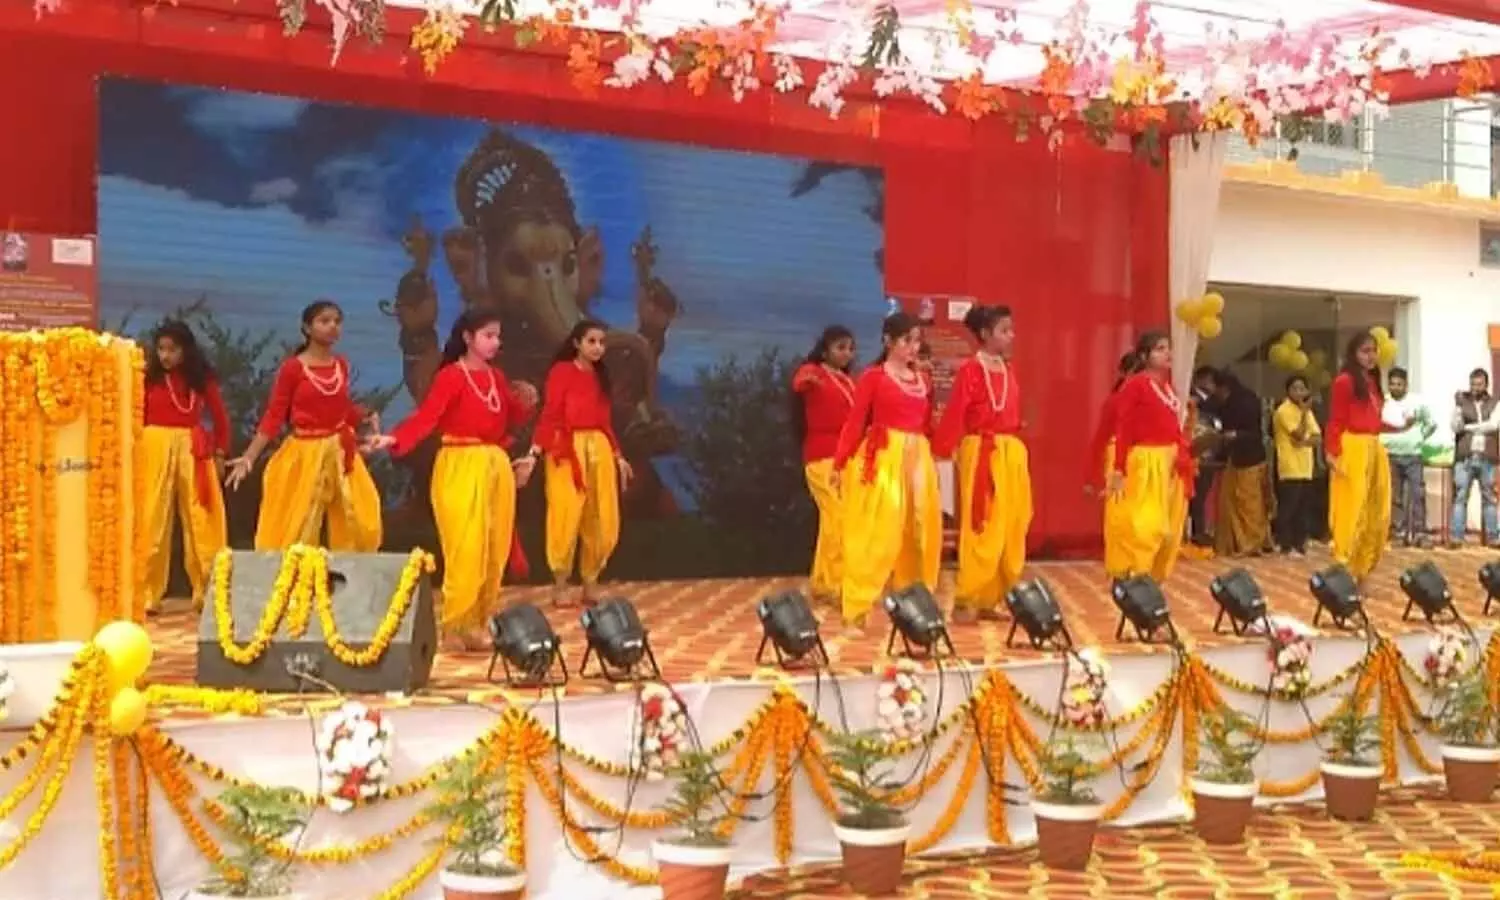 Sonbhadra News: सांस्कृतिक कार्यक्रमों में बच्चों ने दिखाए विविध रंग, मुख्य सचिव हुए बच्चों से रूबरू, दी सीख